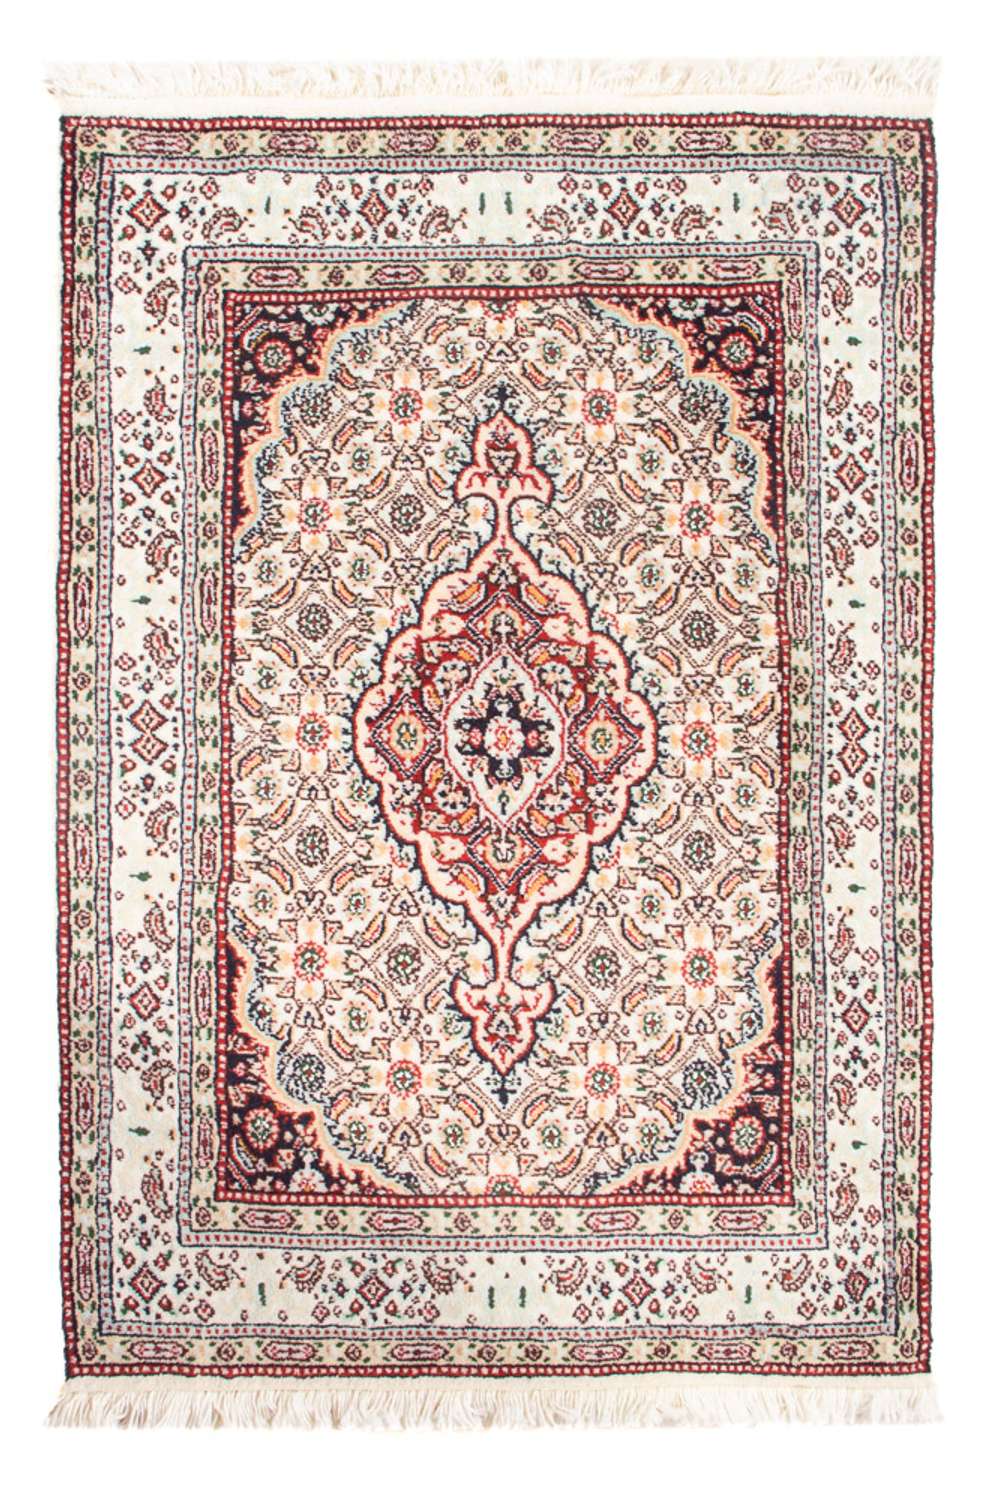 Tapis persan - Classique - Royal - 90 x 60 cm - rouge clair